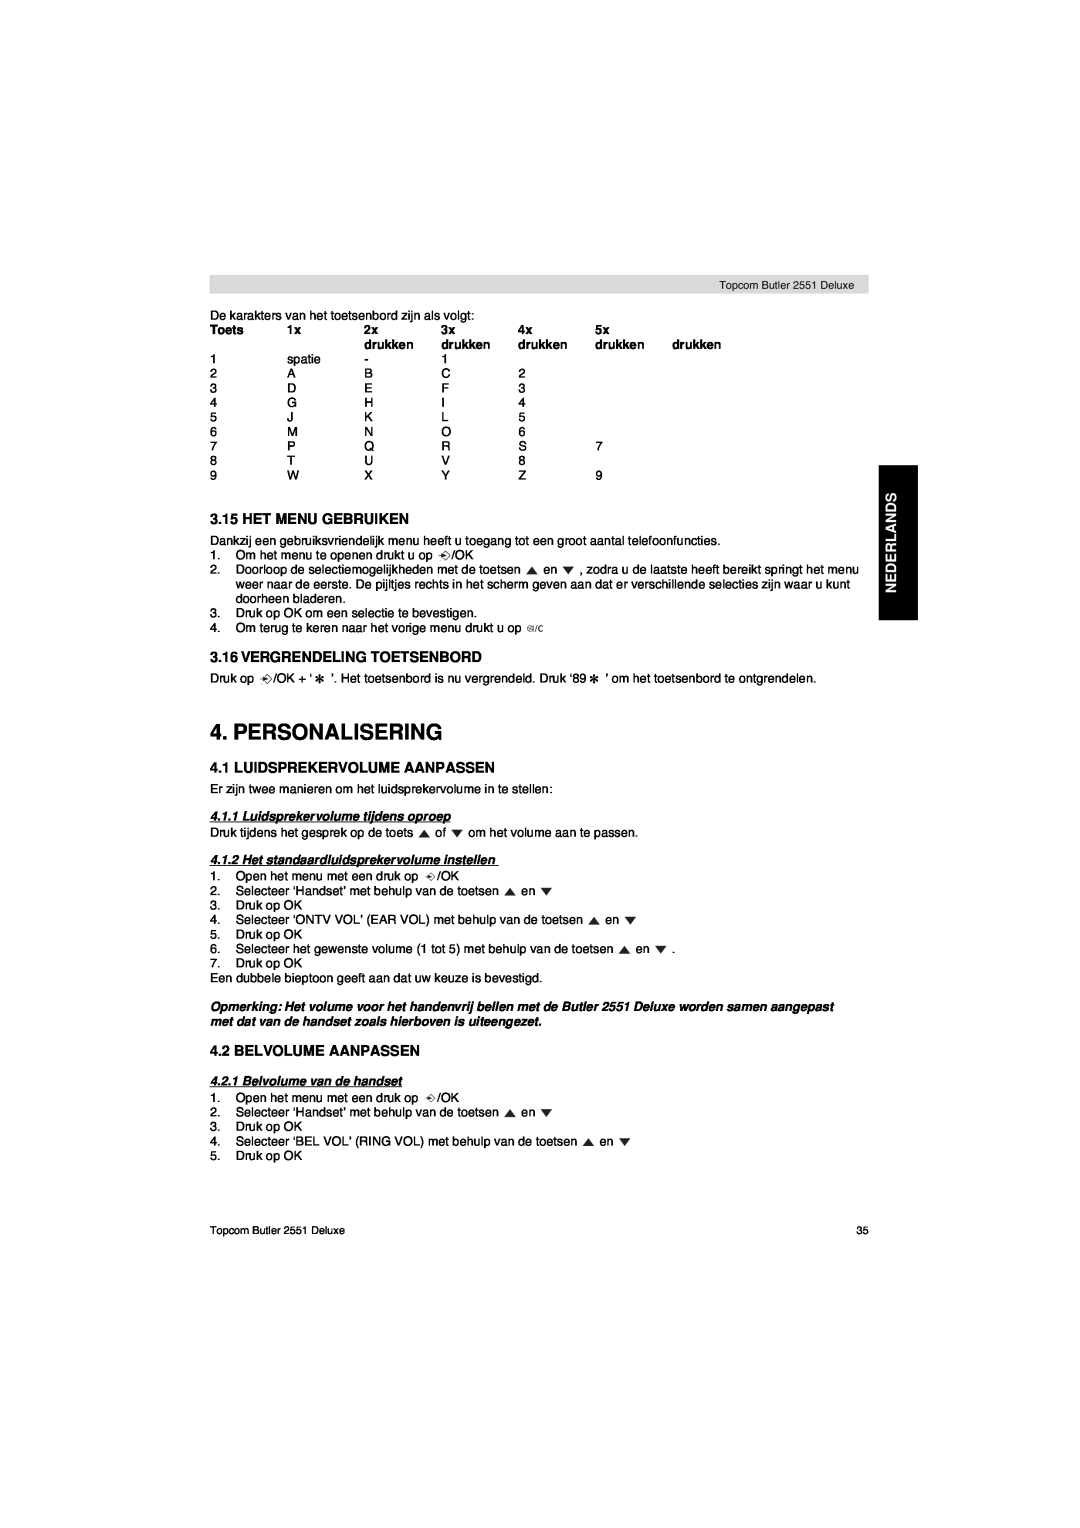 Topcom 2551 manual Personalisering, Het Menu Gebruiken, Vergrendeling Toetsenbord, Luidsprekervolume Aanpassen, Nederlands 